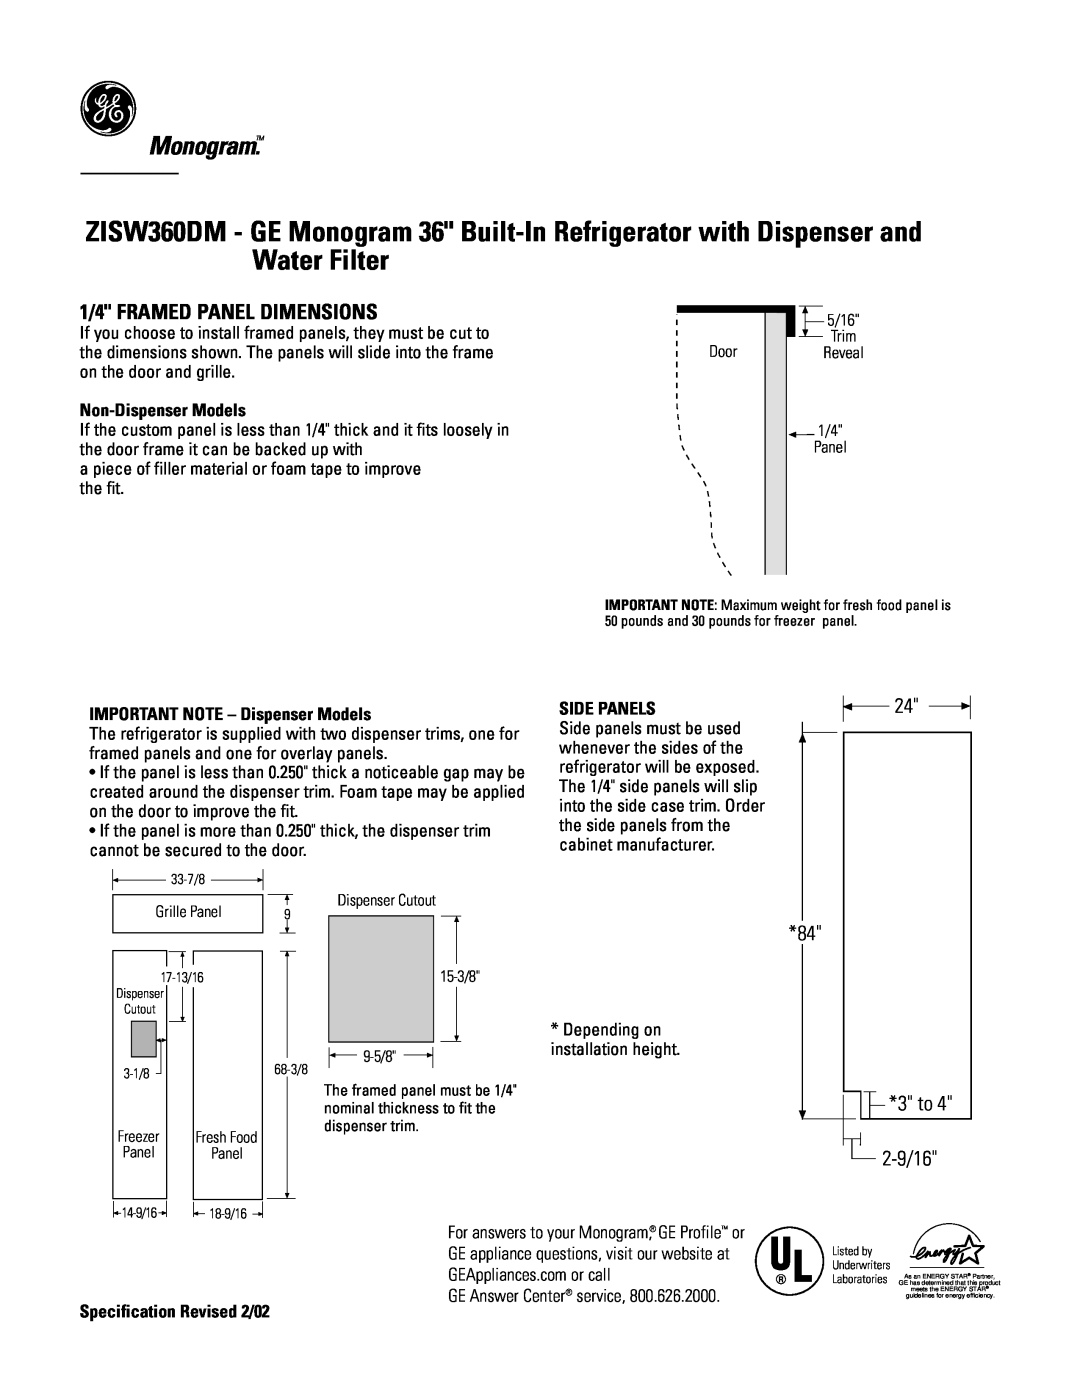 GE Monogram ZISW360DM 1/4 FRAMED PANEL DIMENSIONS, Monogram, Non-Dispenser Models, IMPORTANT NOTE - Dispenser Models 